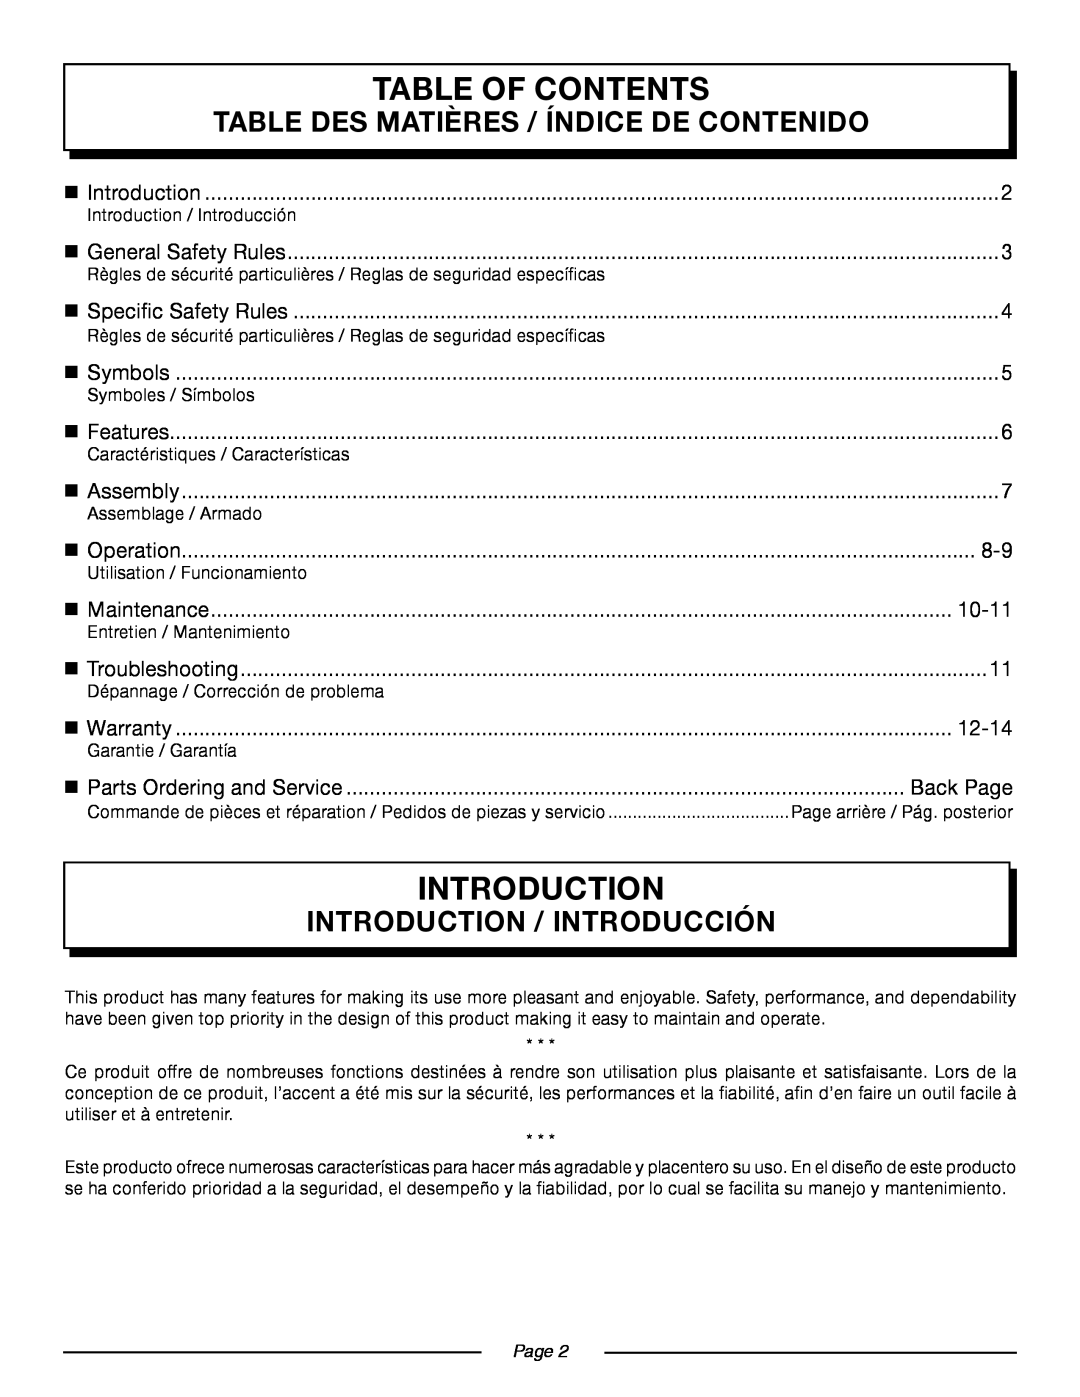 Homelite UT09521 Table Of Contents, Table Des Matières / Índice De Contenido, Introduction / Introducción, 10-11, Page 